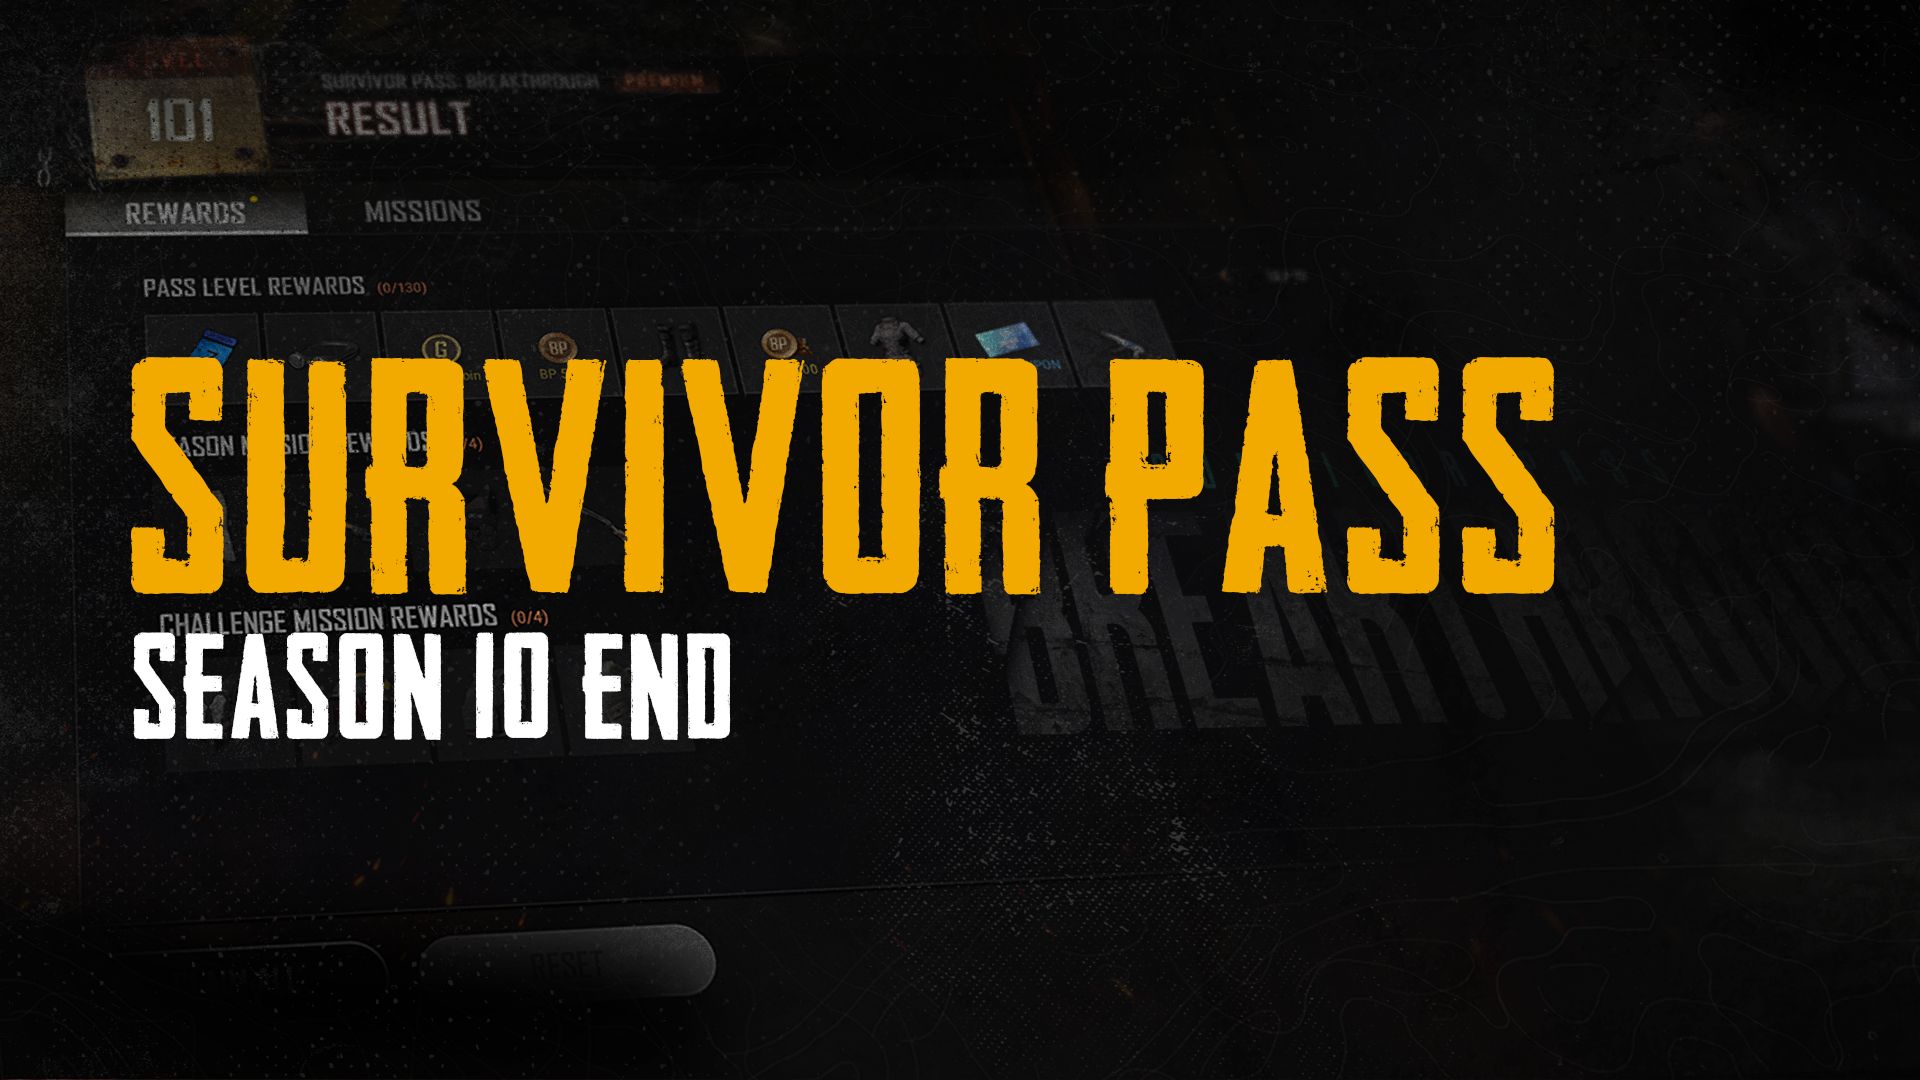 10-й сезон Survivor Pass PUBG